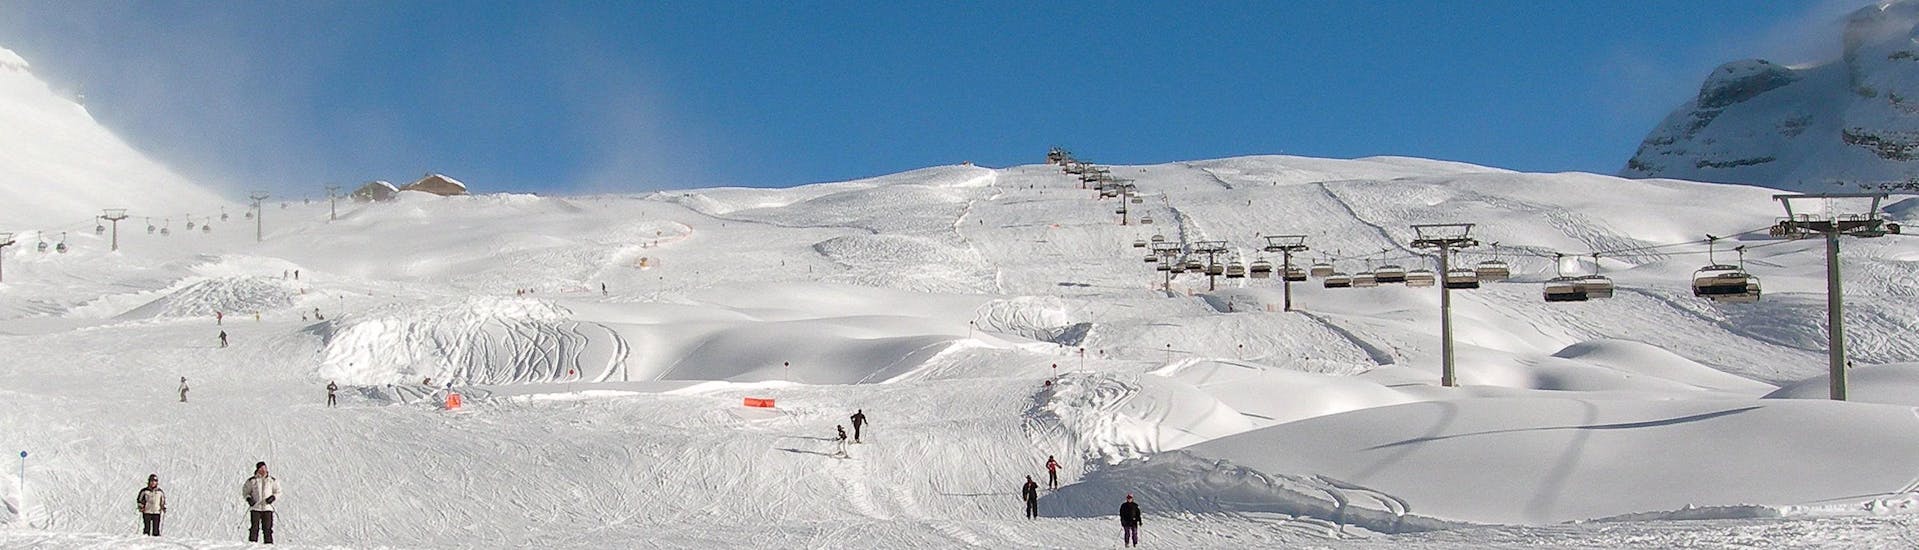 Uitzicht op de pistes van Folgarida, waar je skilessen kunt boeken.